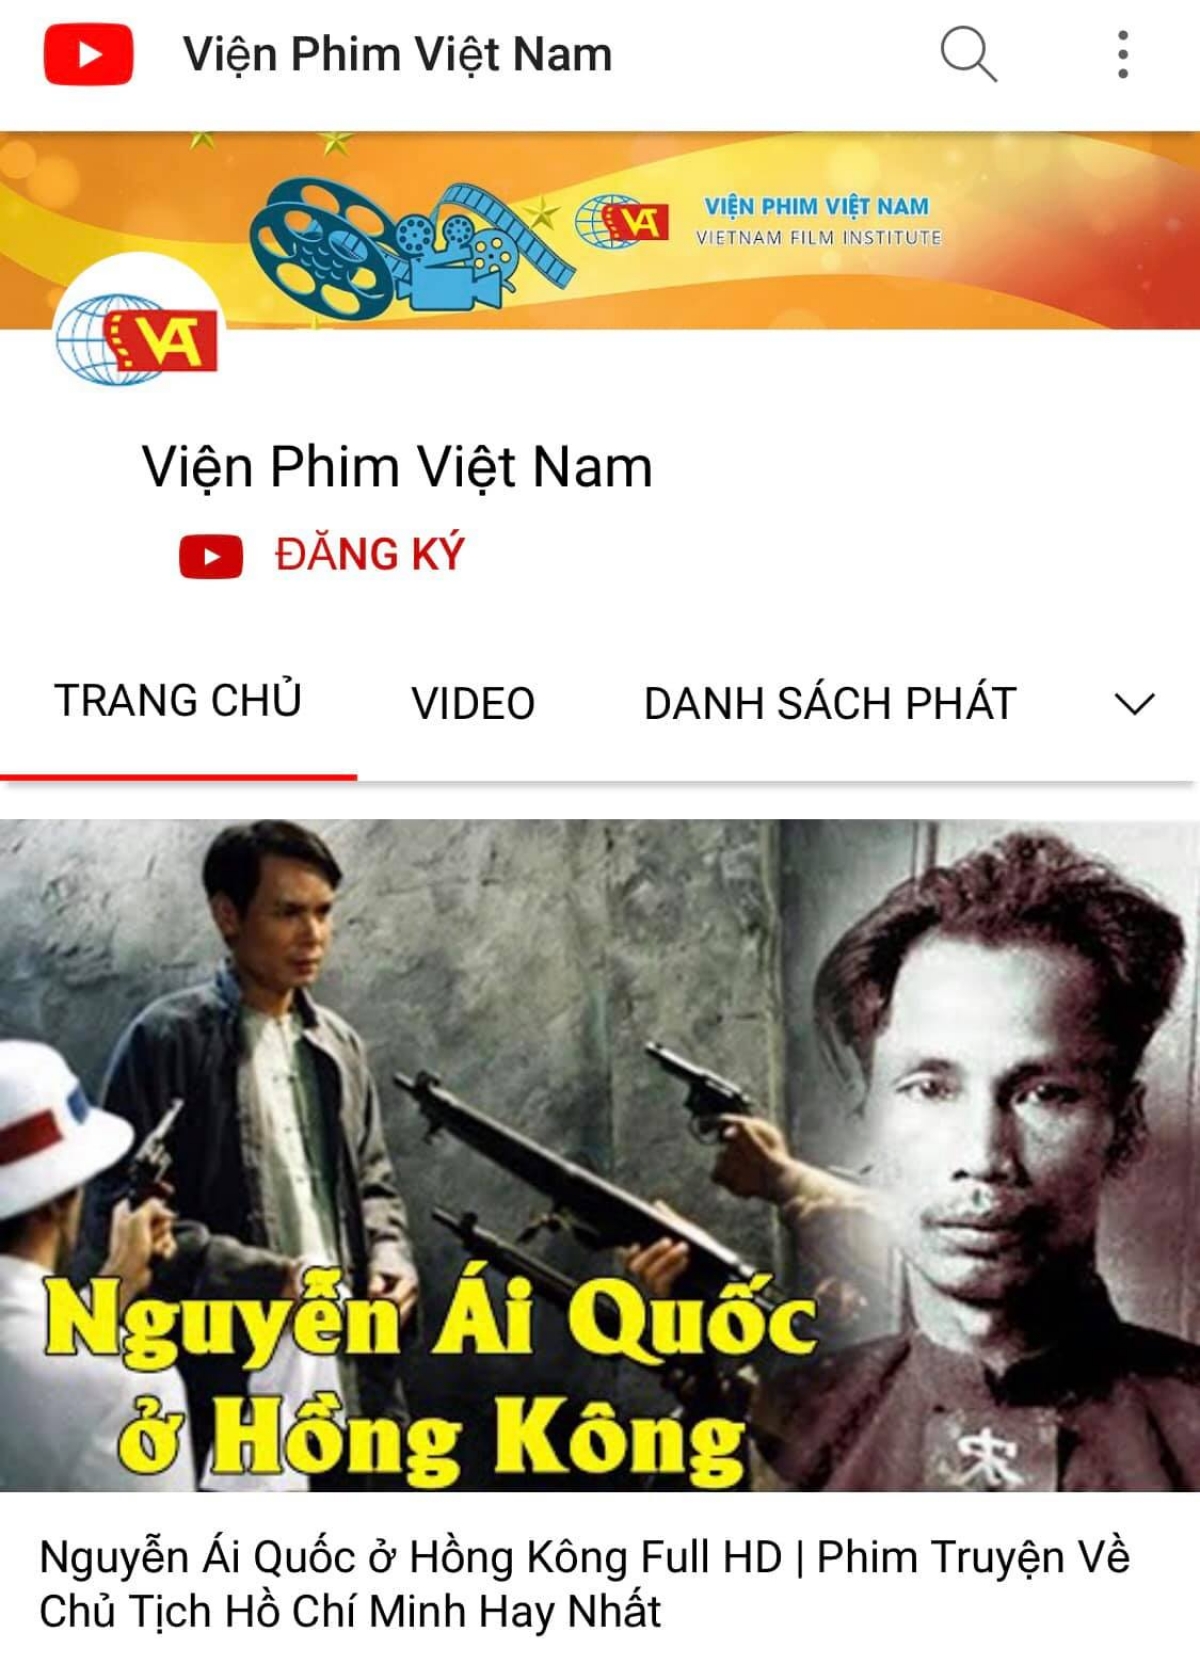 Viện Phim Việt Nam: Hãy đến với Viện Phim Việt Nam để khám phá các tác phẩm điện ảnh xứng danh quê hương Việt Nam. Với đội ngũ nhân sự giàu kinh nghiệm, chúng tôi đảm bảo sẽ mang lại những bộ phim đầy tinh thần và nghệ thuật.